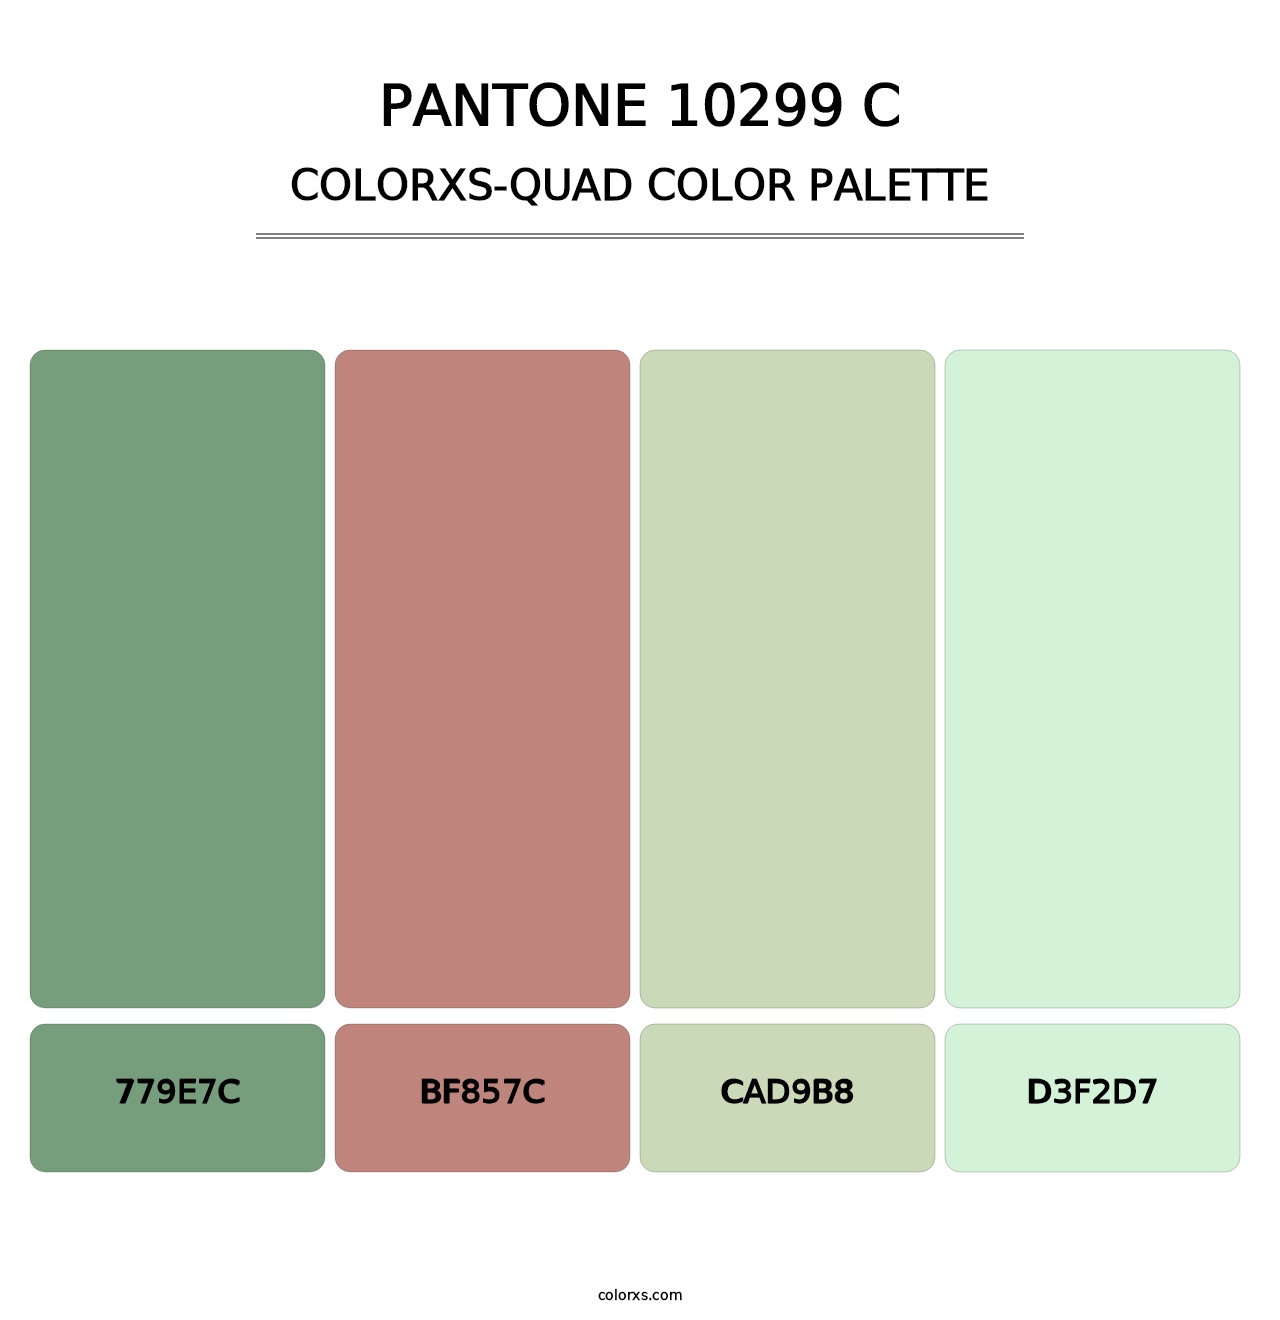 PANTONE 10299 C - Colorxs Quad Palette